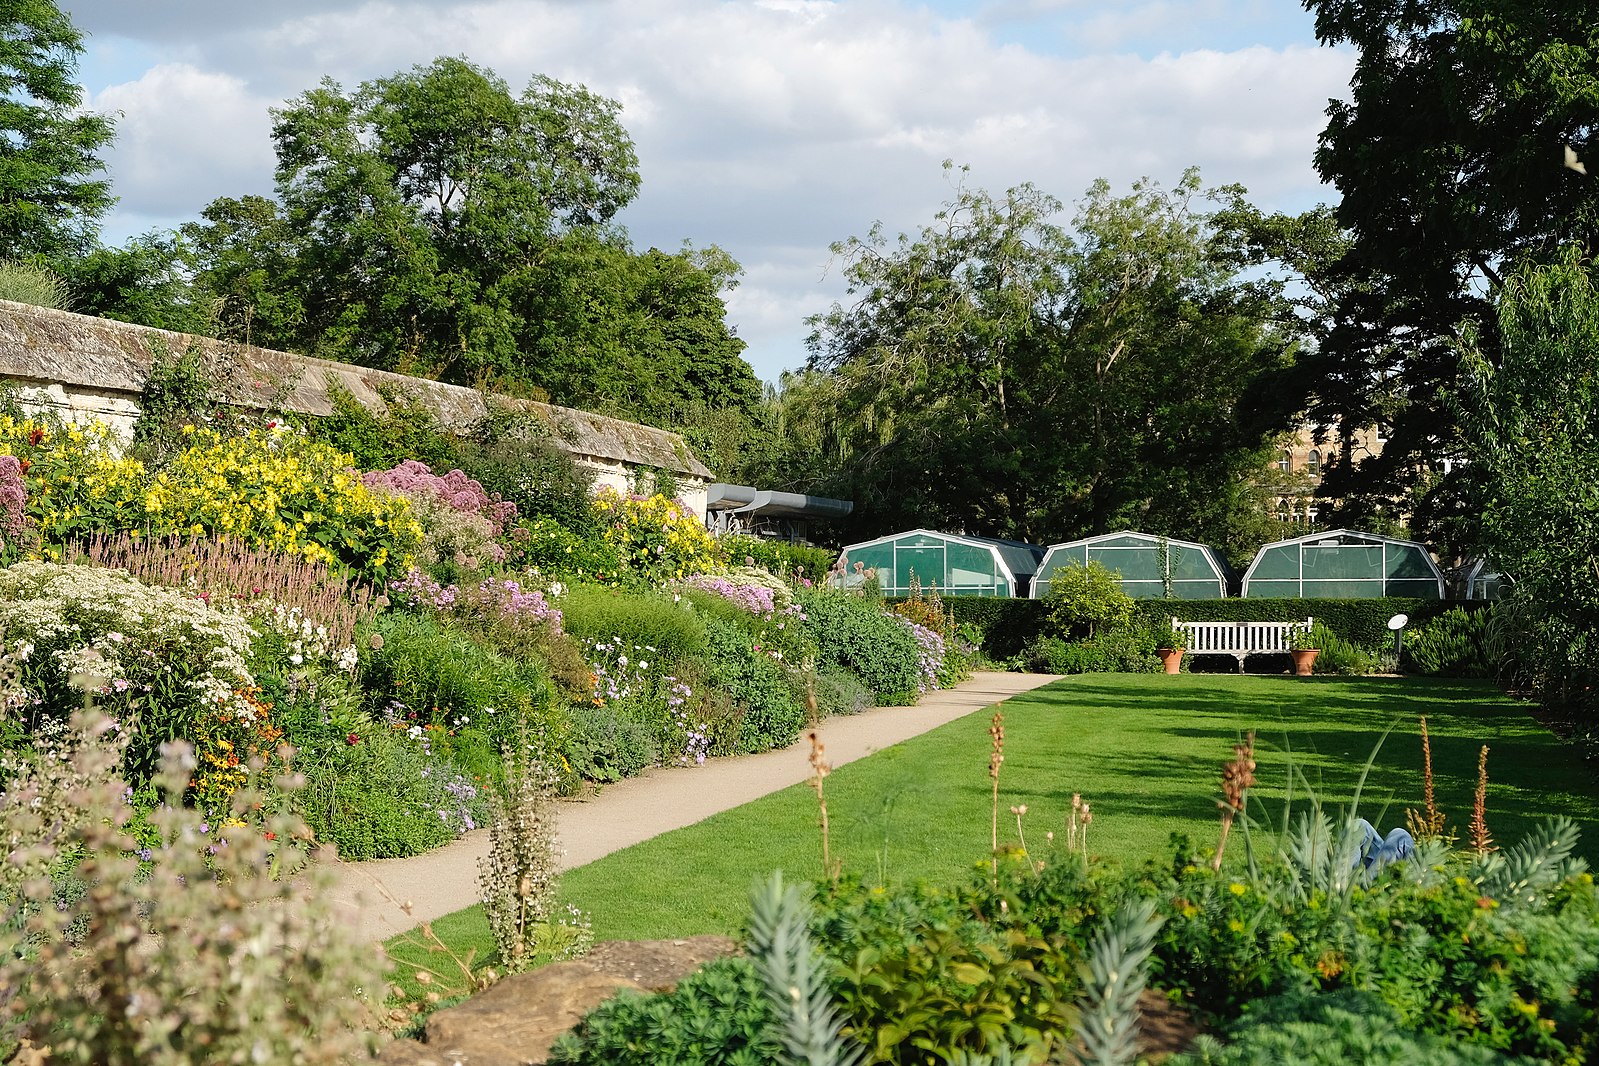 Exploring the Oxford Botanic Garden